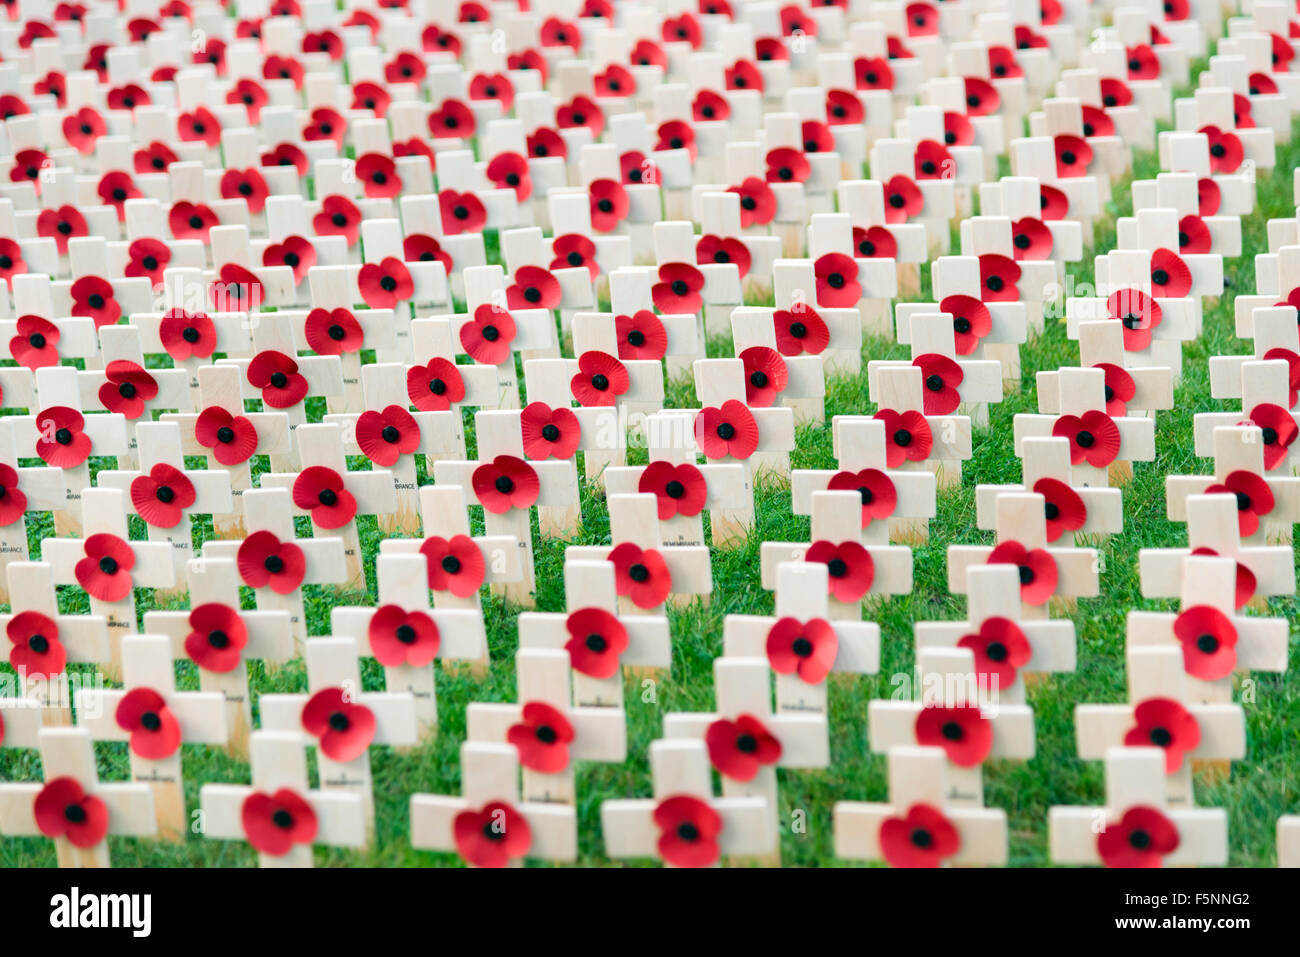 Dans un champ de coquelicots rouges du souvenir à l'extérieur de la cathédrale de Hereford, Royaume-Uni. Croix de bois se souvenir de guerres mondiales, en Angleterre. Banque D'Images